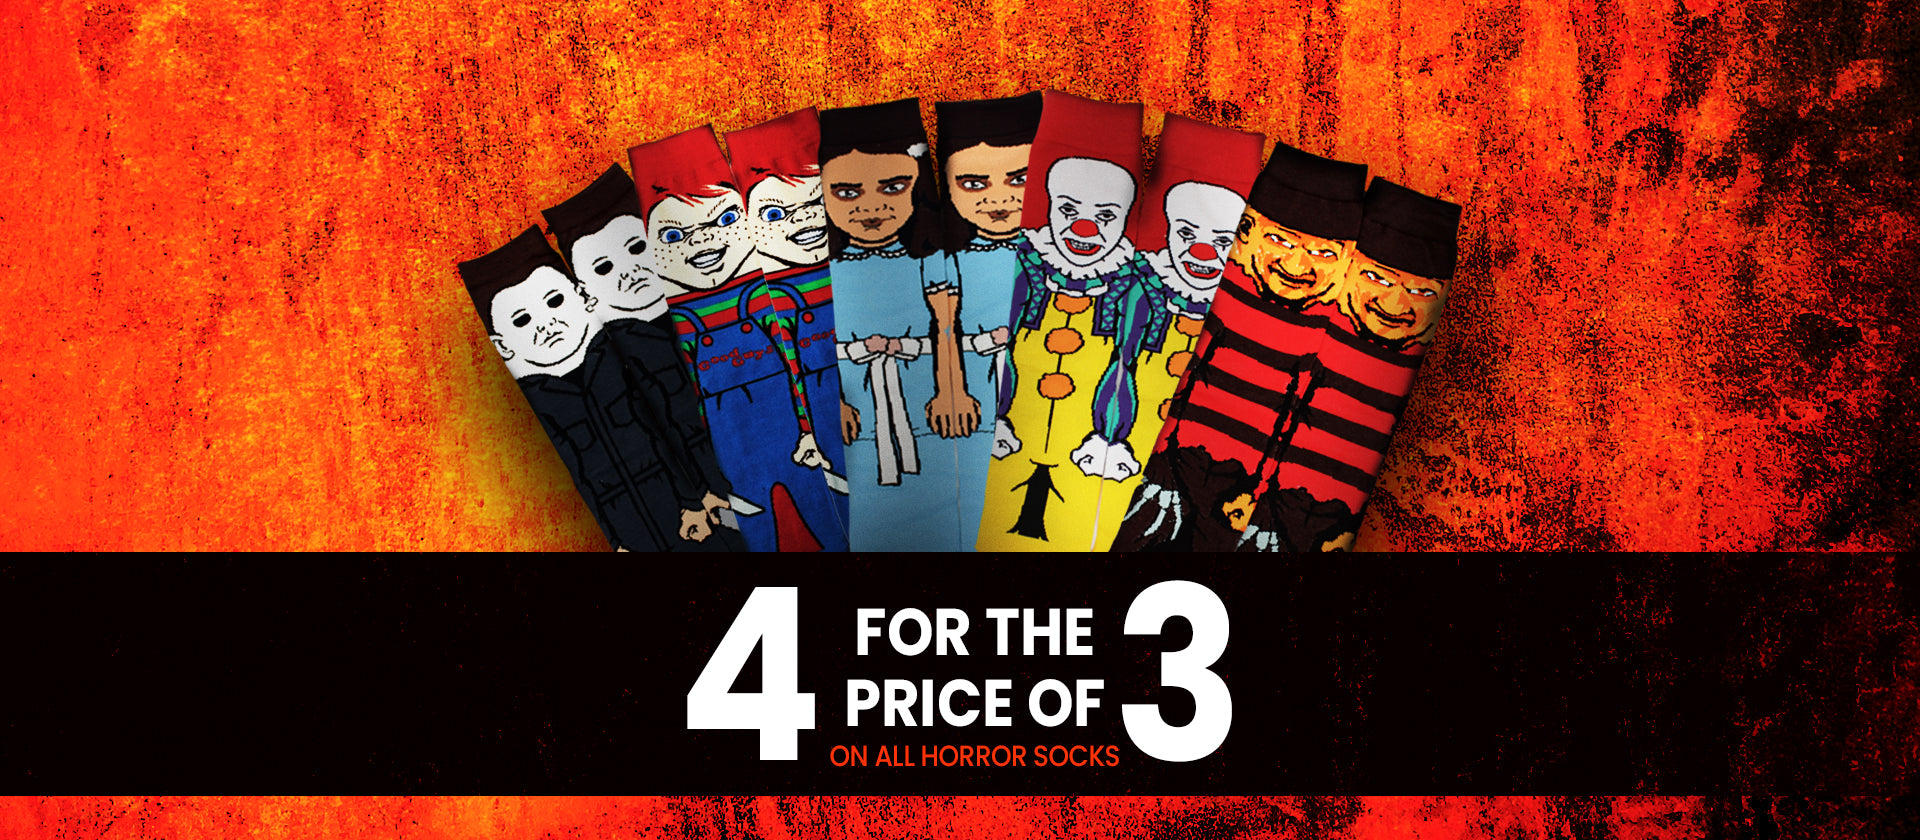 Horror Movie Socks 4 for the price of 3 Halloween offer from Horrorfier, the UK Horror Gift Store